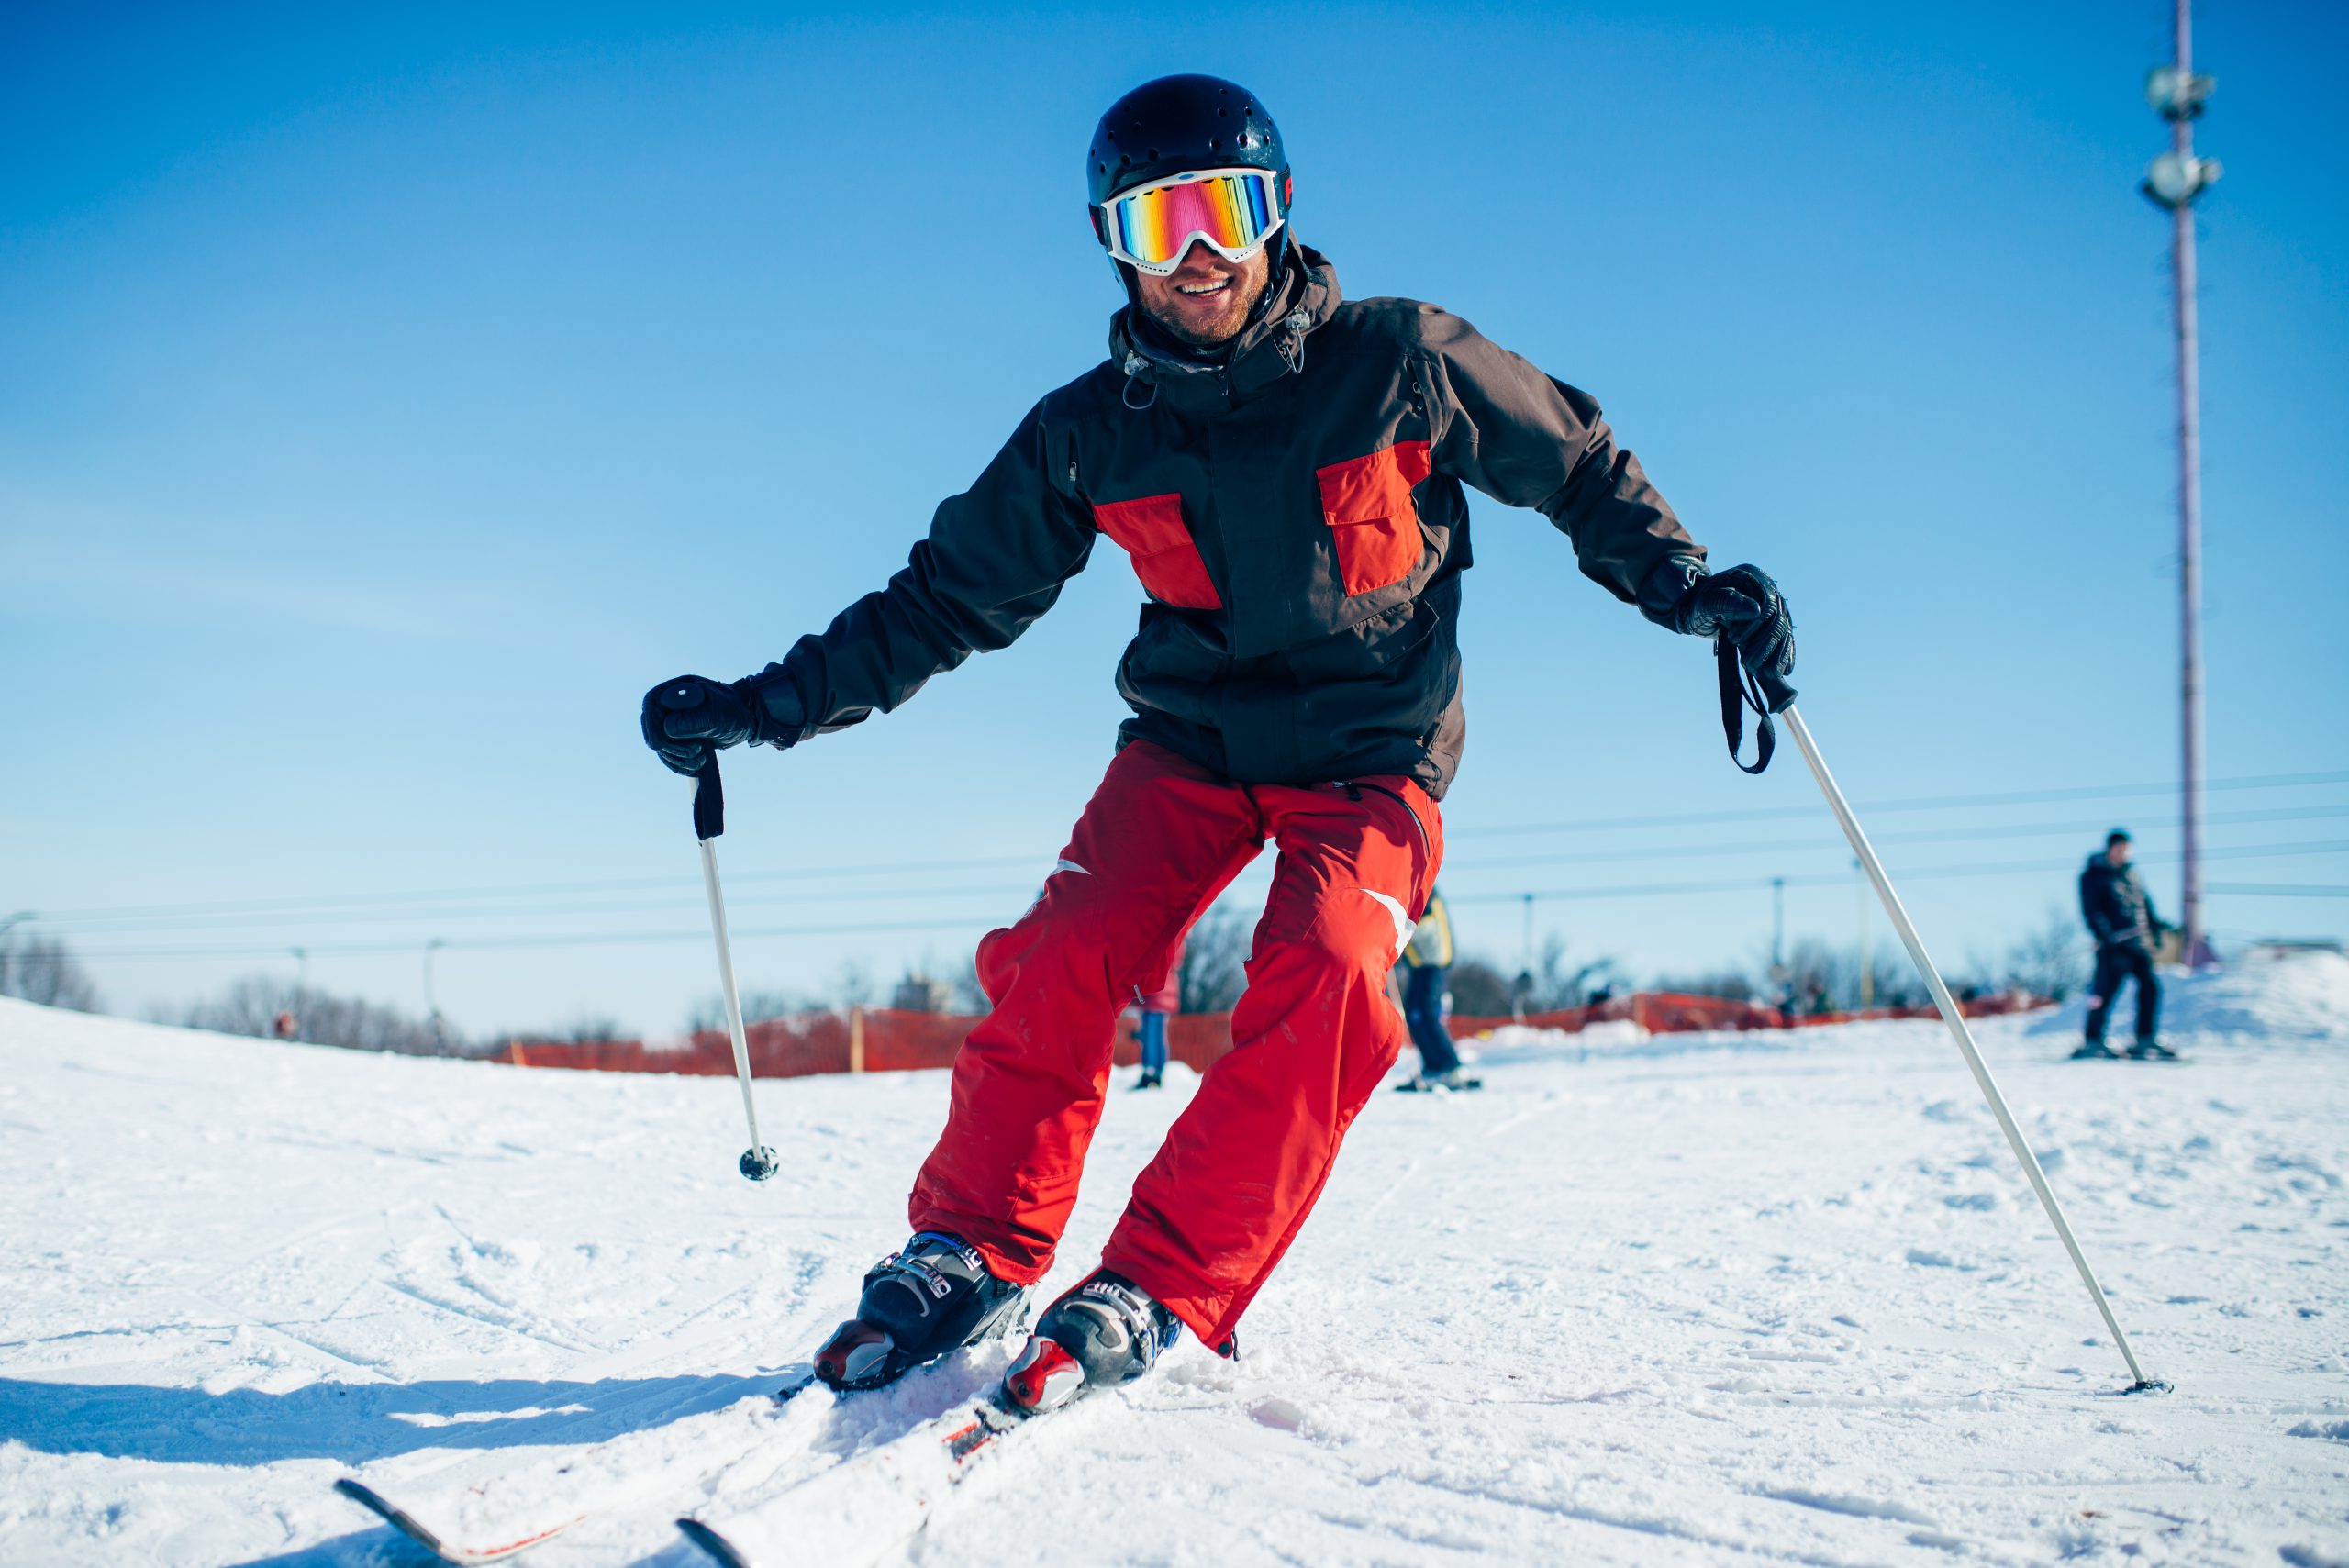 jaka długość nart Jazda na nartach zjazdowych dostarcza dużo adrenaliny i ekscytacji, zwłaszcza na stokach o większym nachyleniu. To idealny sport dla tych, którzy lubią poczuć wiatr we włosach i szybkość.